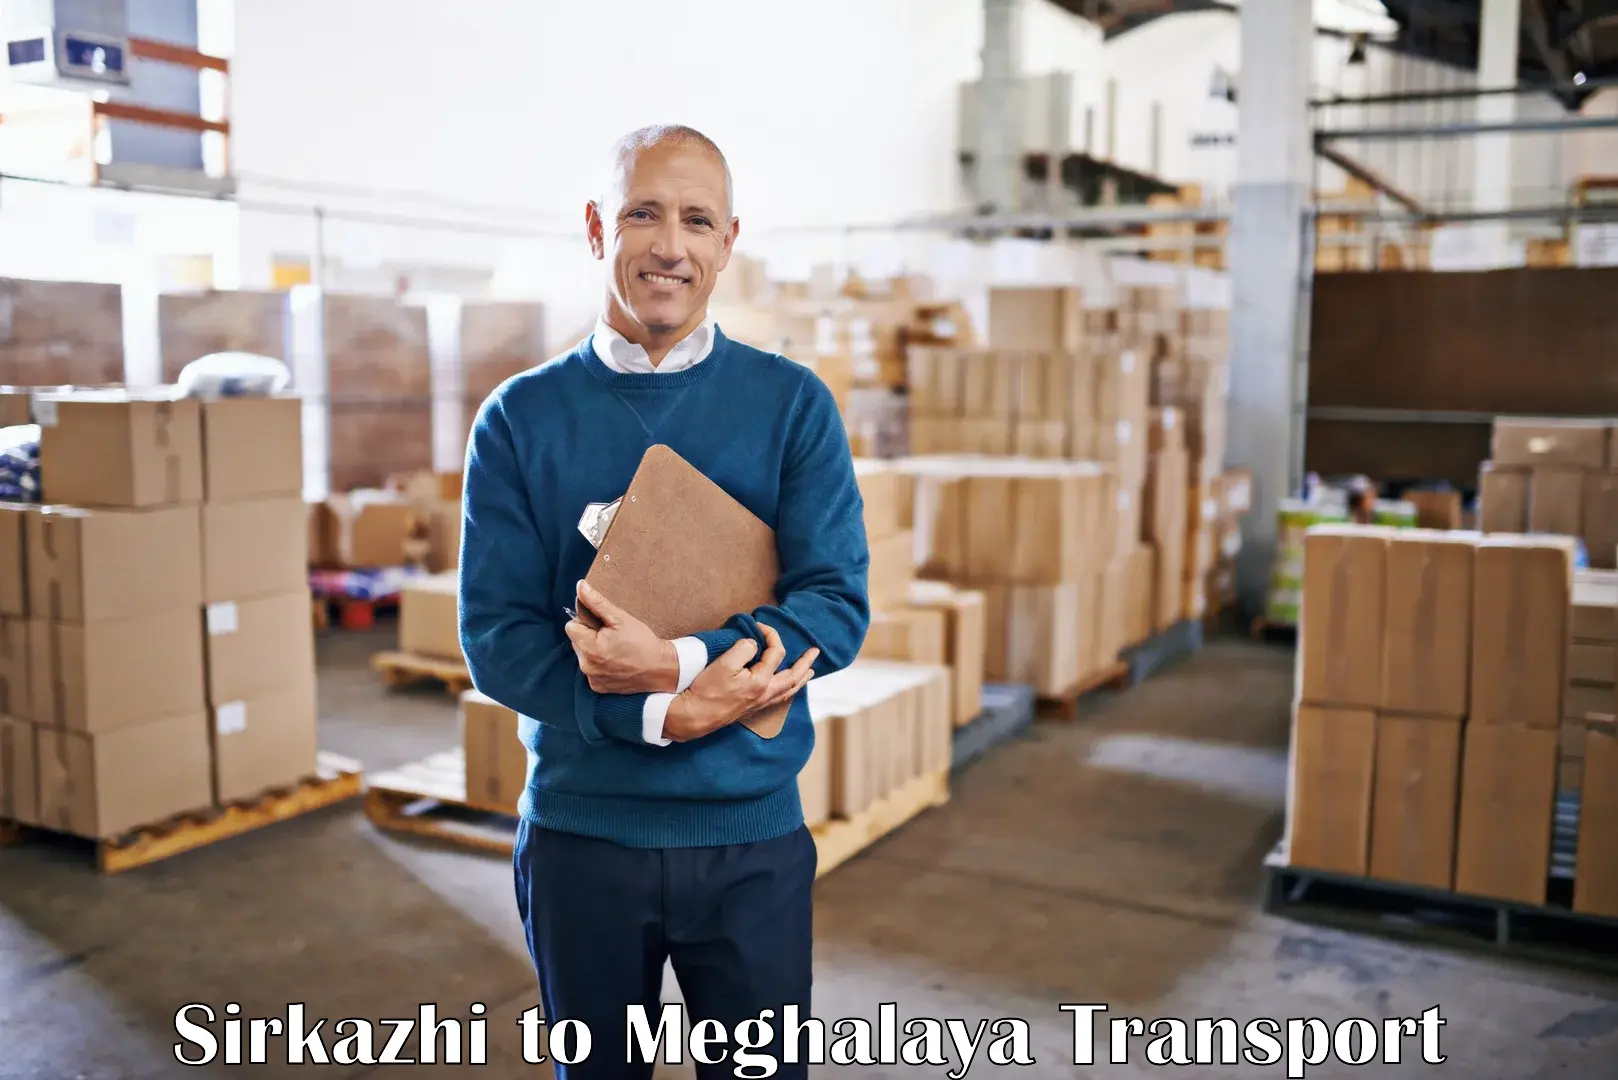 Transport in sharing Sirkazhi to Meghalaya